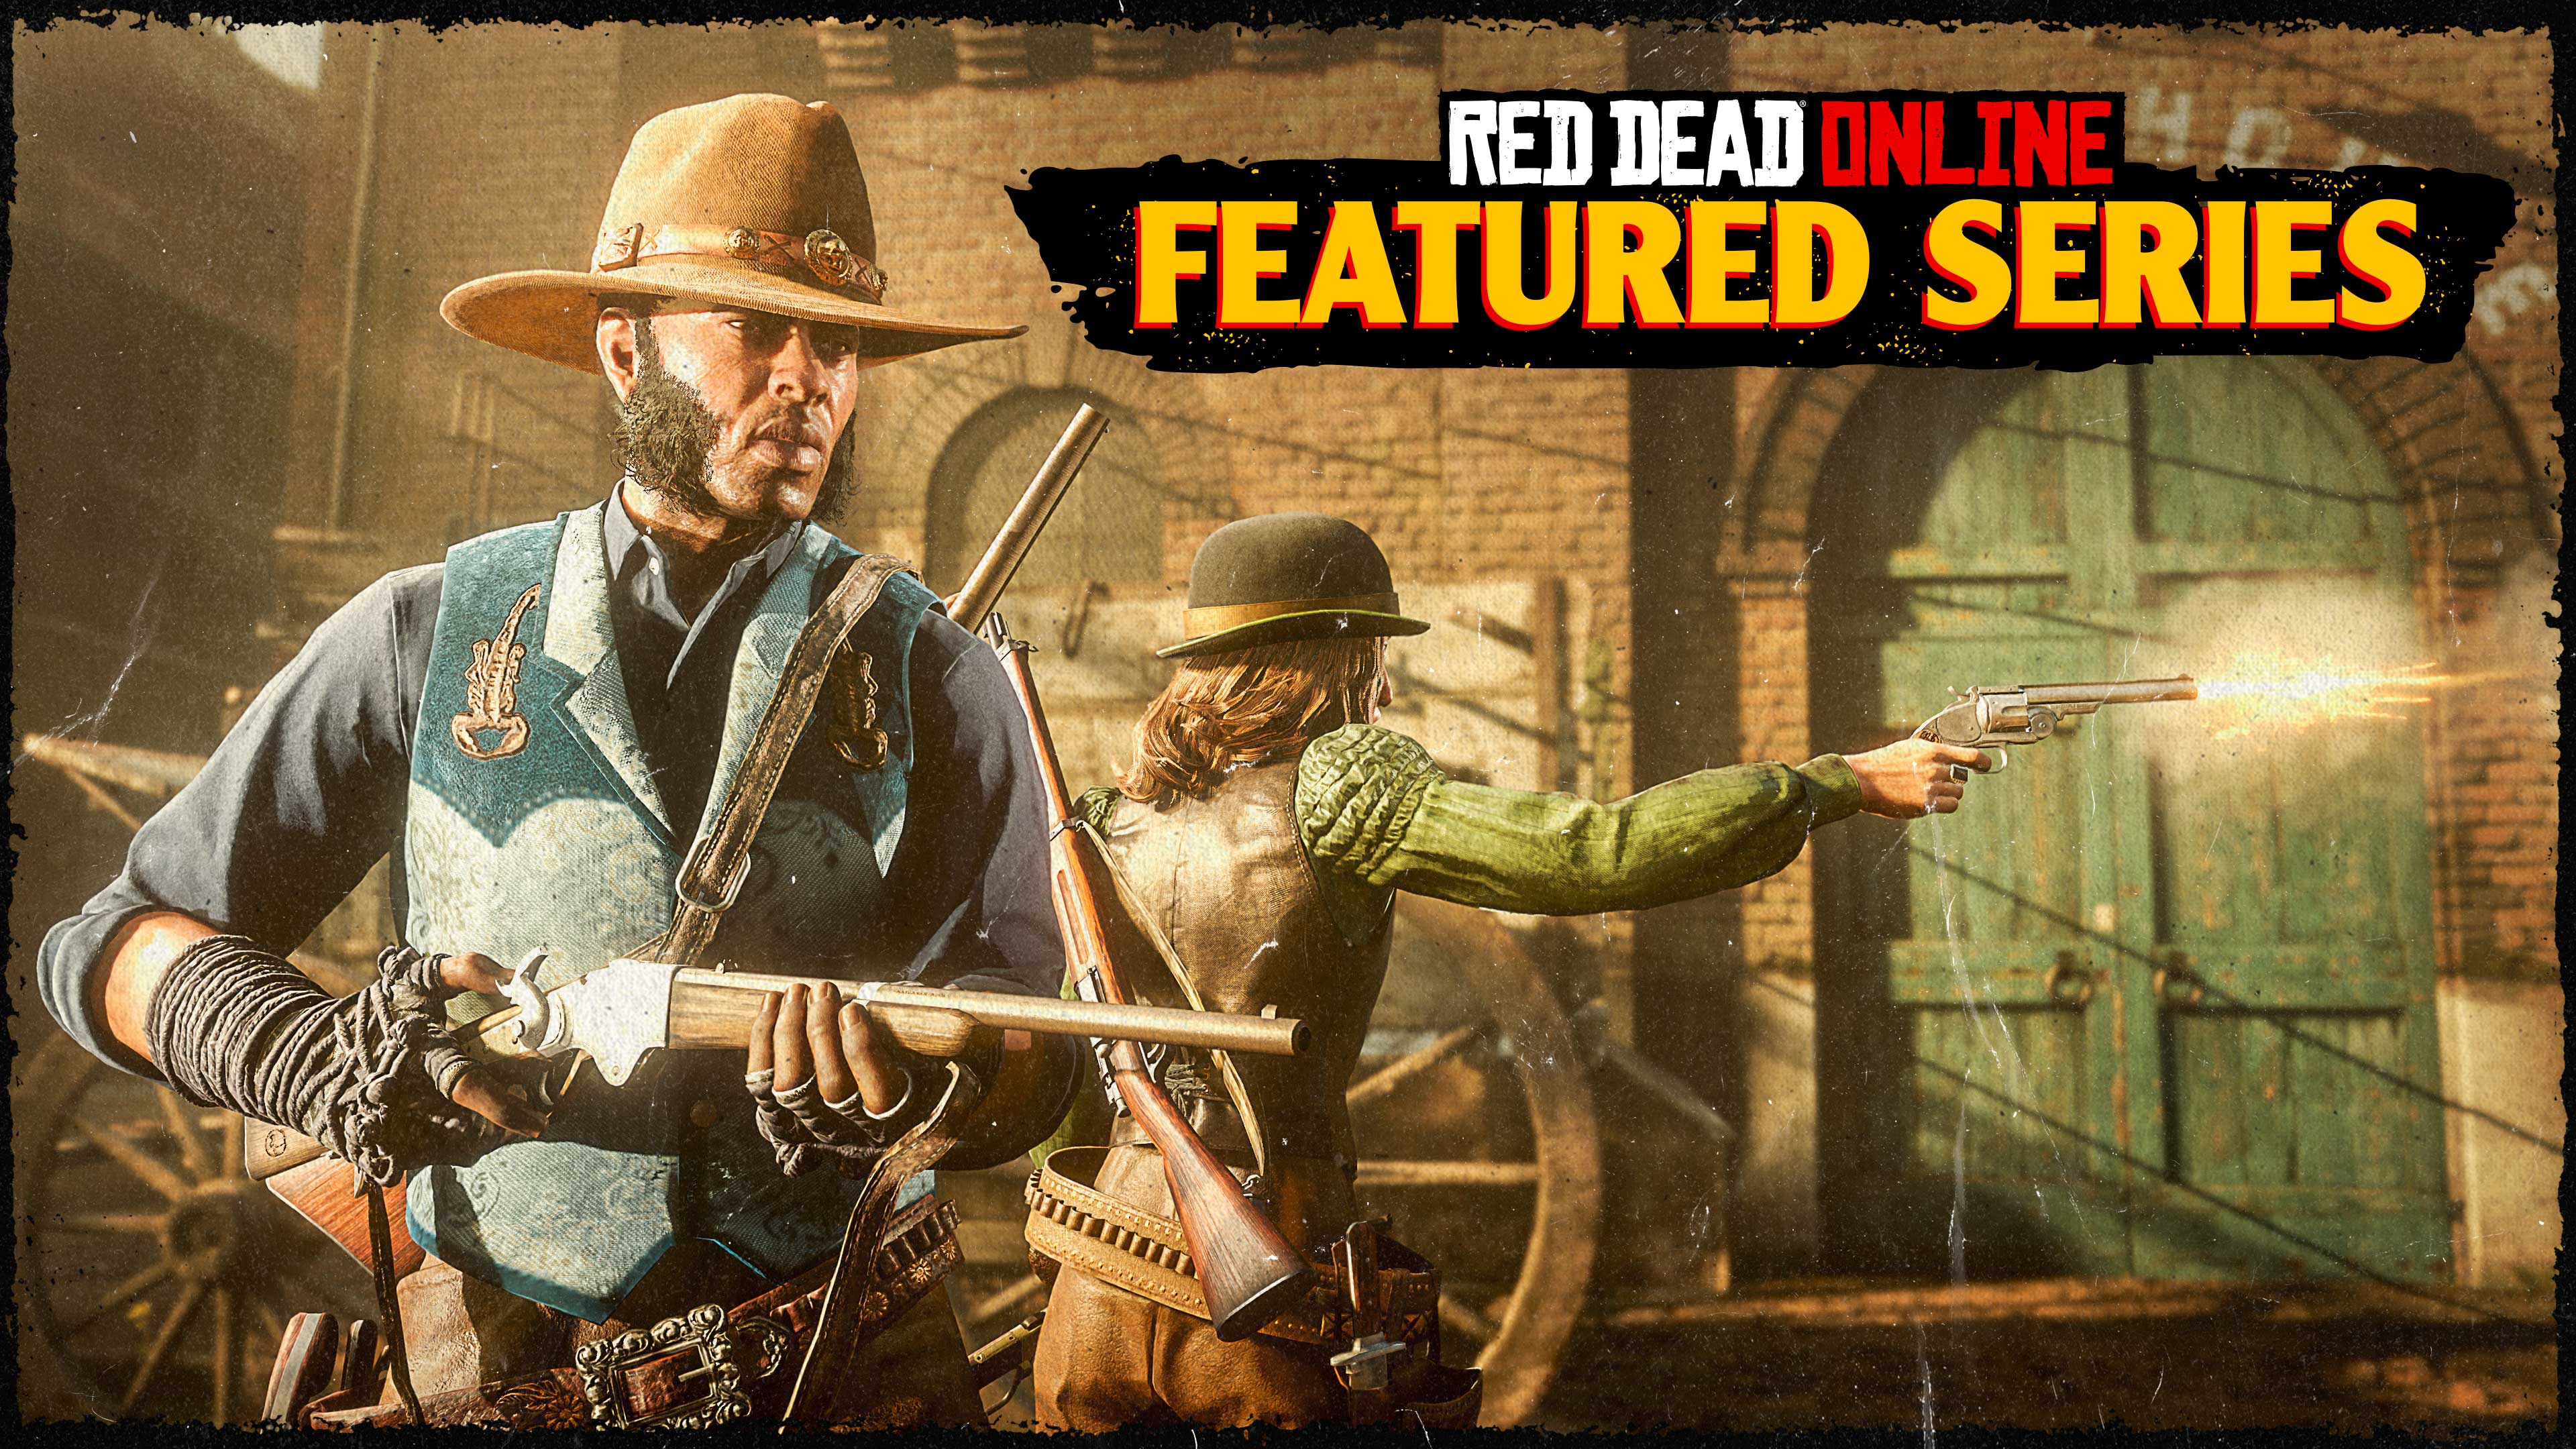 Póster de las series destacadas de Red Dead Online con dos jugadores en línea durante un modo Enfrentamiento.